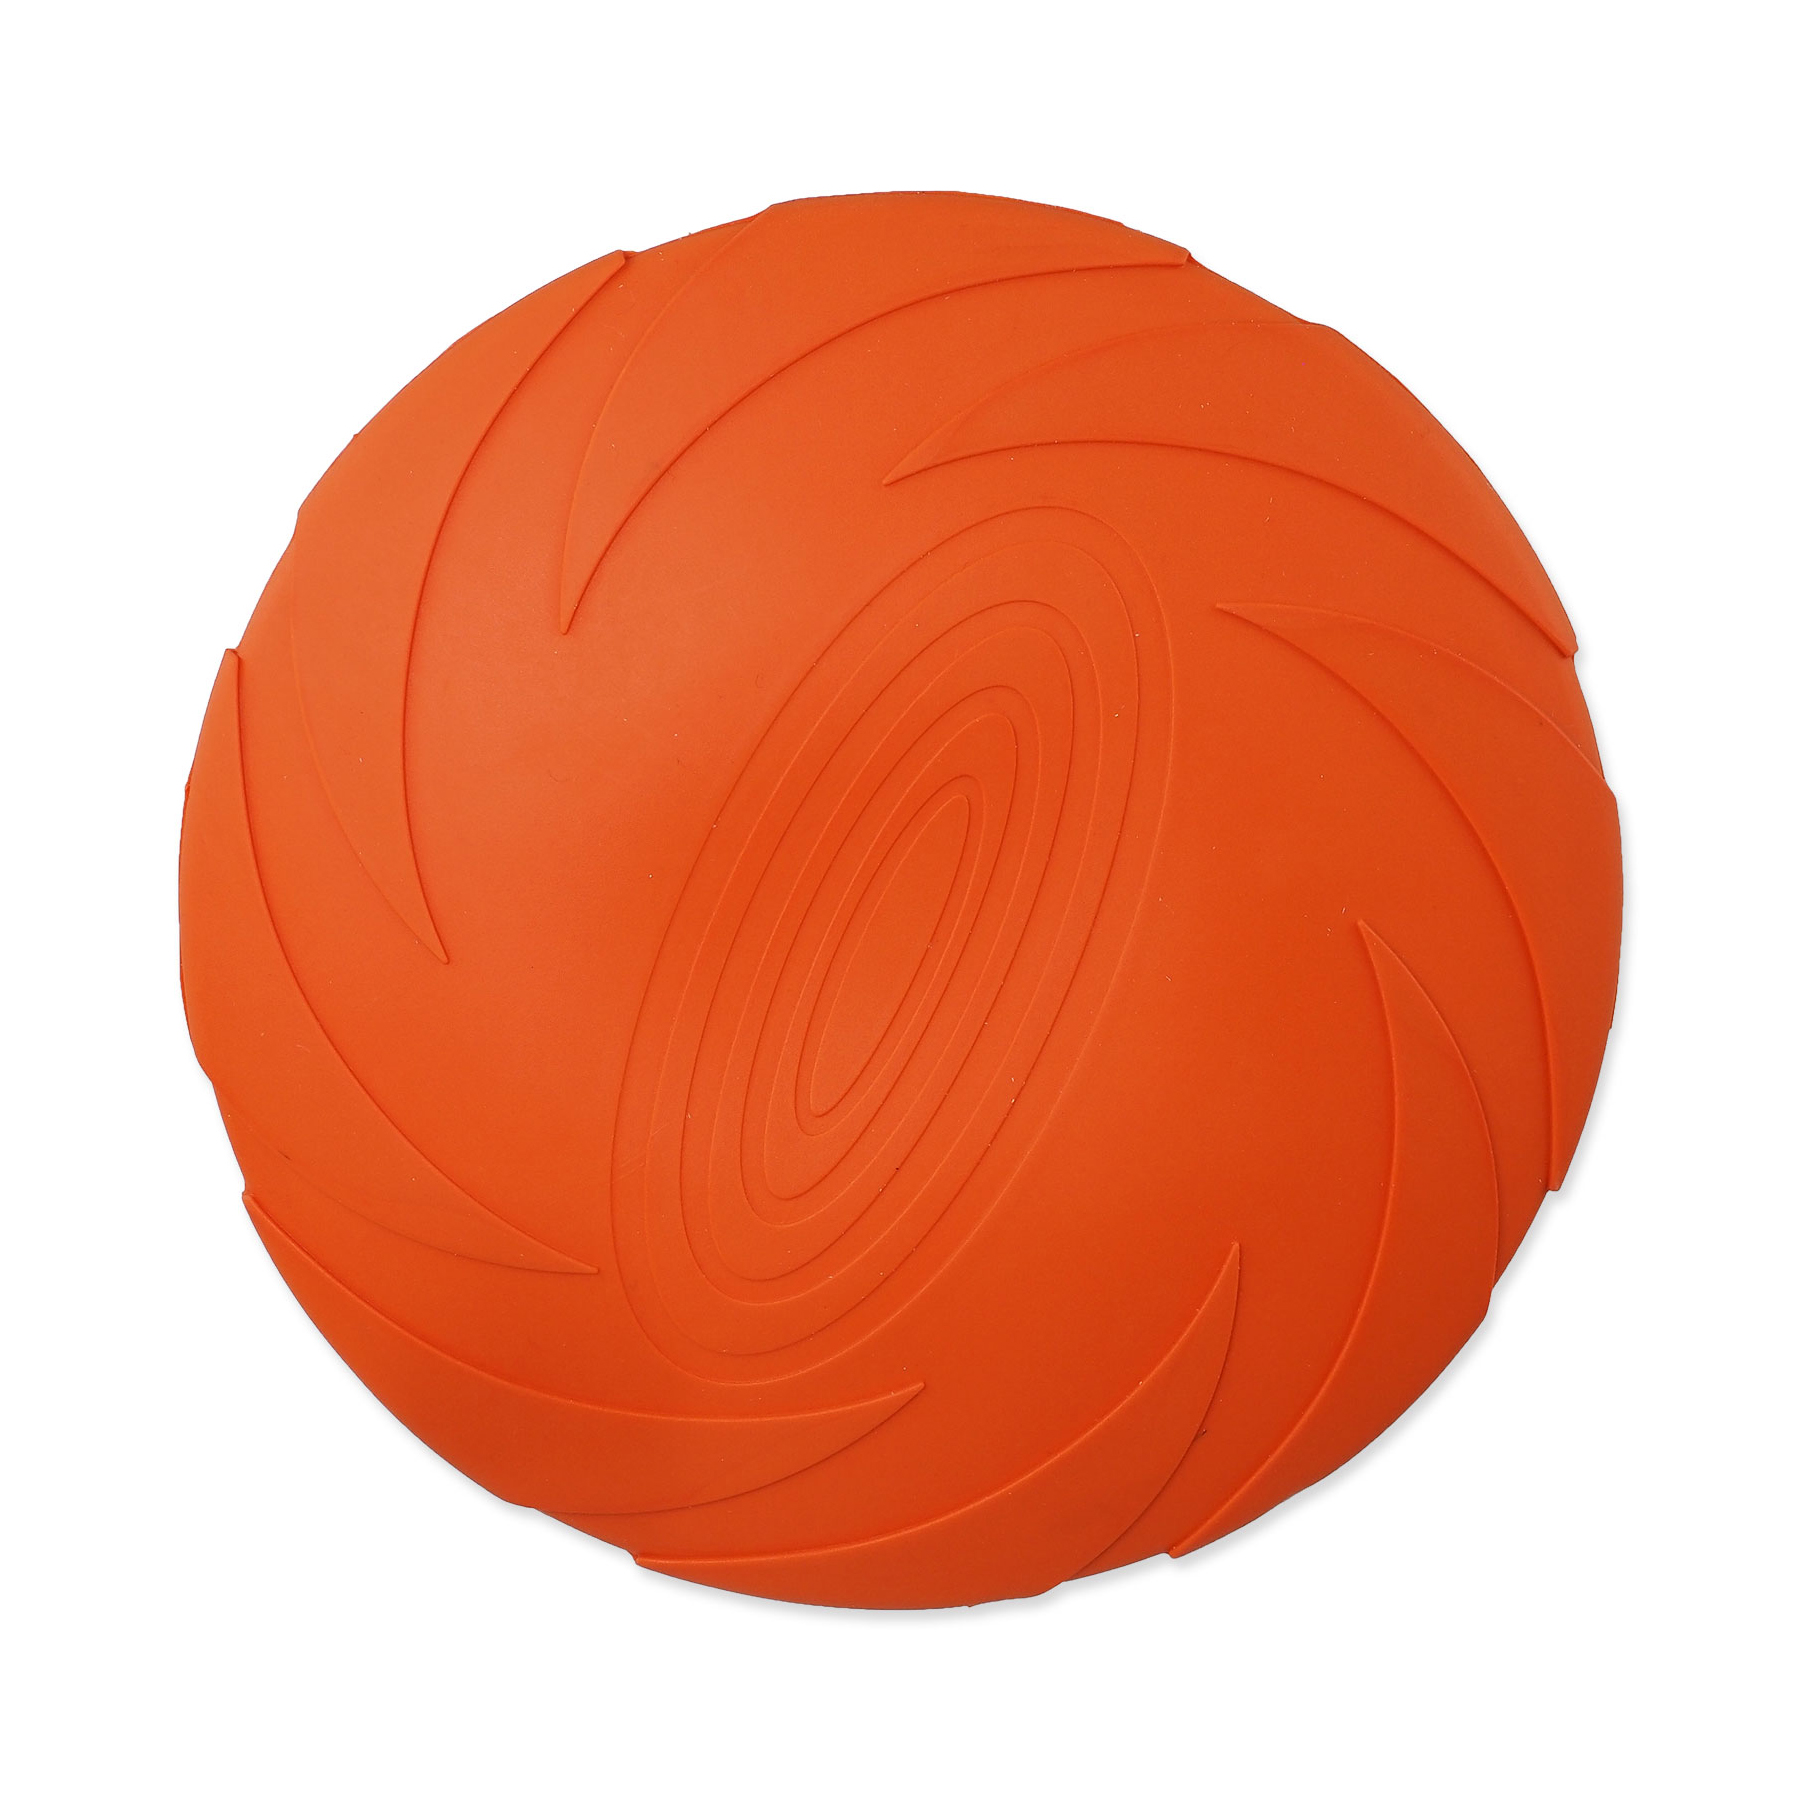 Dog Fantasy Hračka disk plovoucí oranžový 18 cm Dog Fantasy